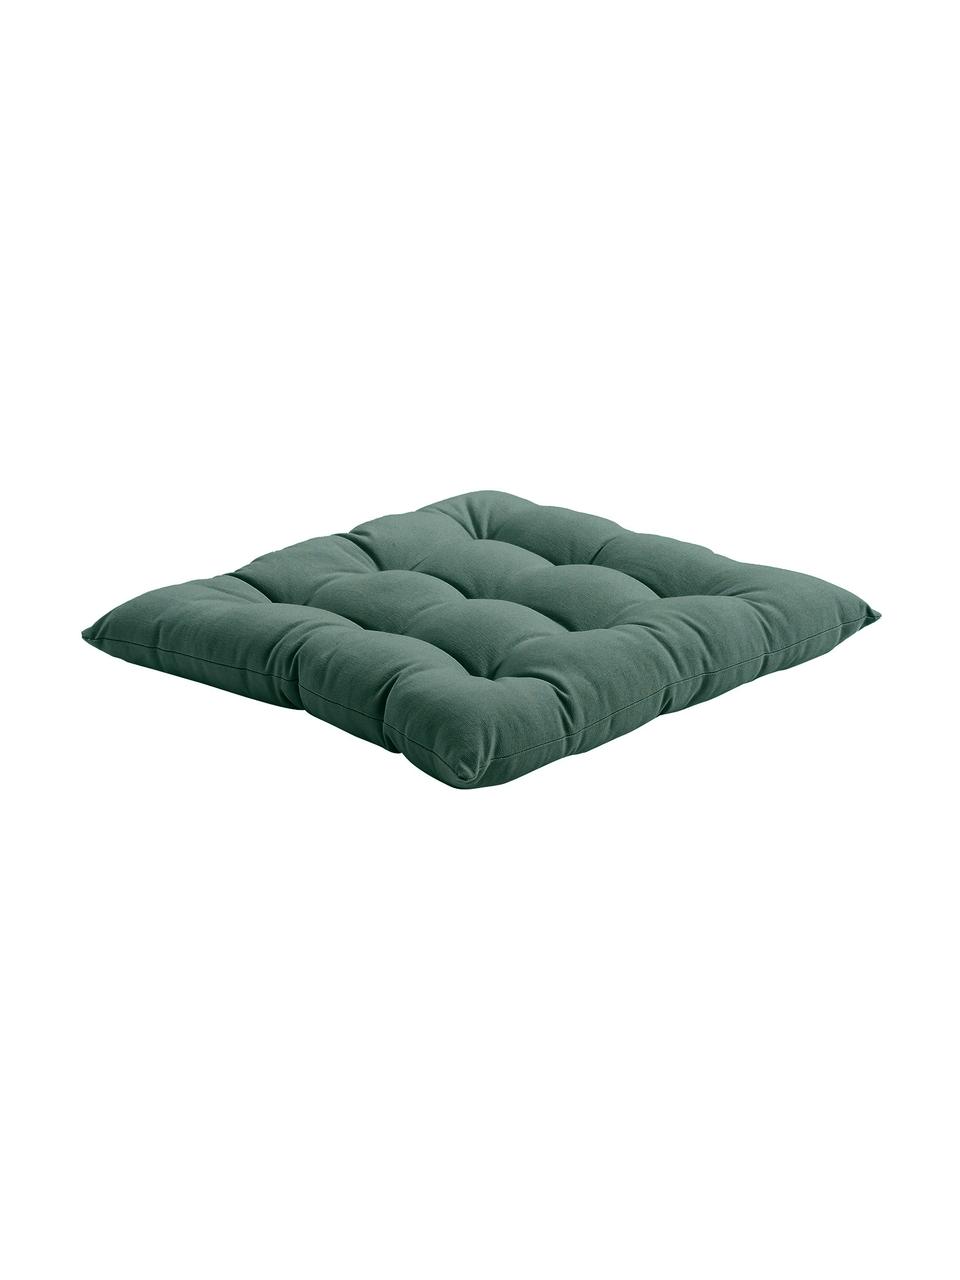 Cuscino sedia verde scuro Ava, Rivestimento: 100% cotone, Verde scuro, Larg. 40 x Lung. 40 cm